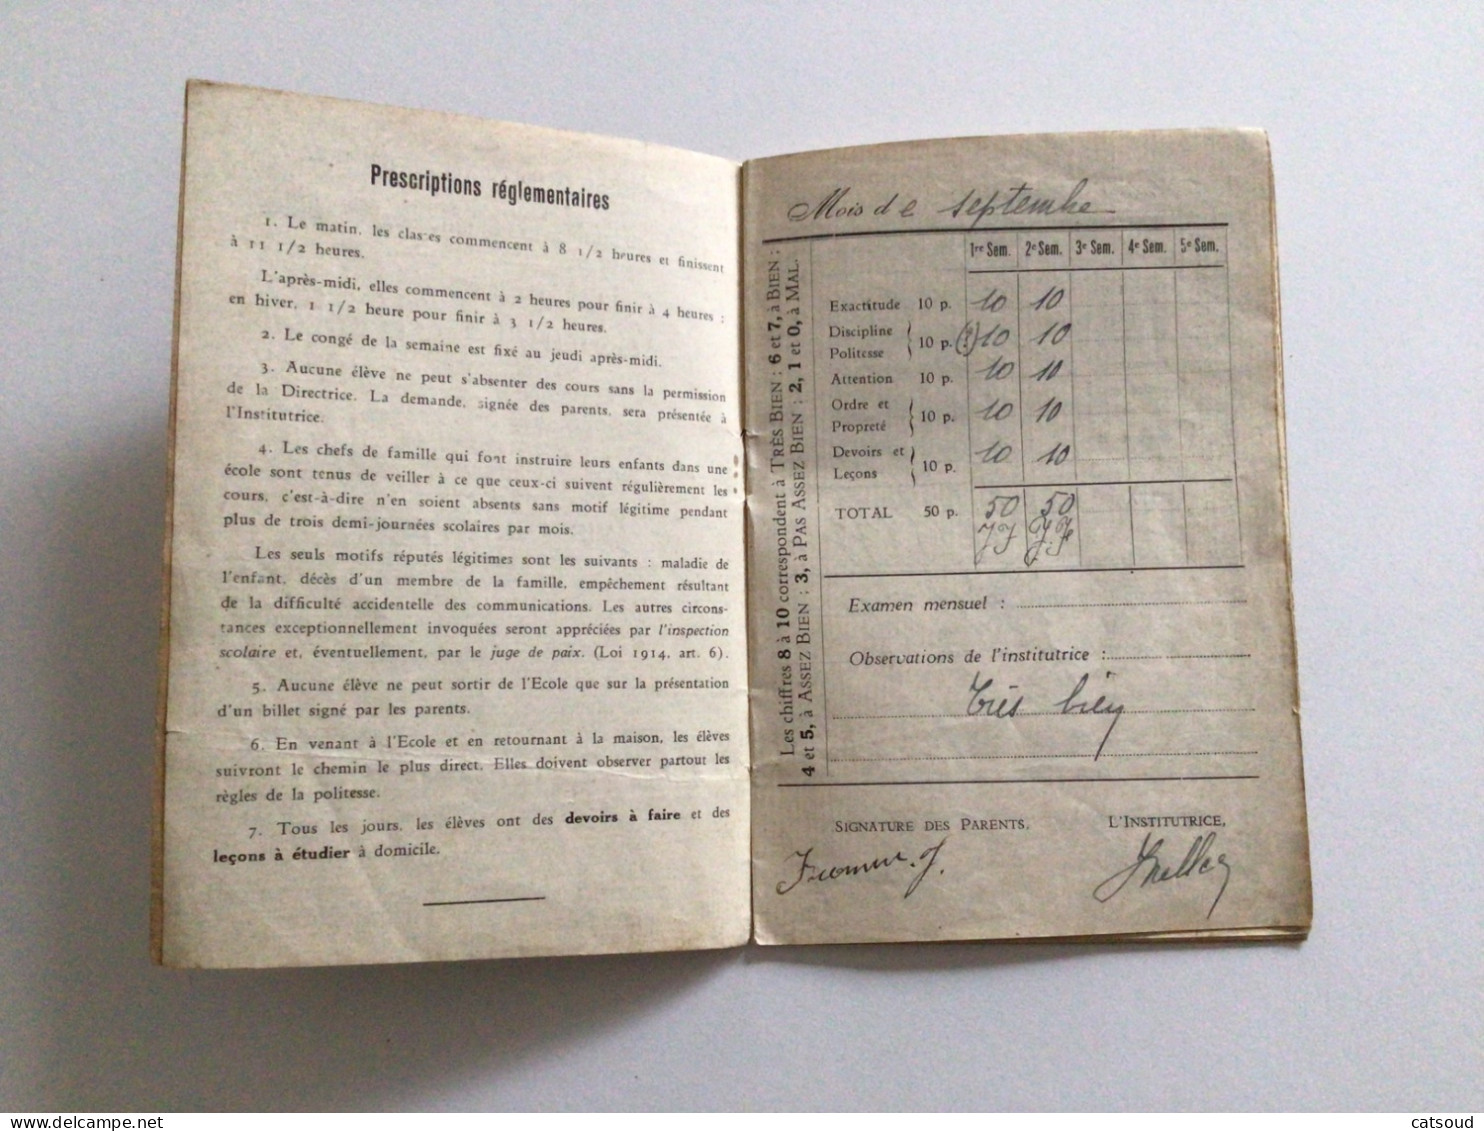 Ancien Document Commercial (1938-1939) Verviers Livret De Classe École Notre-Dame Guillemine FROMM - Diplome Und Schulzeugnisse